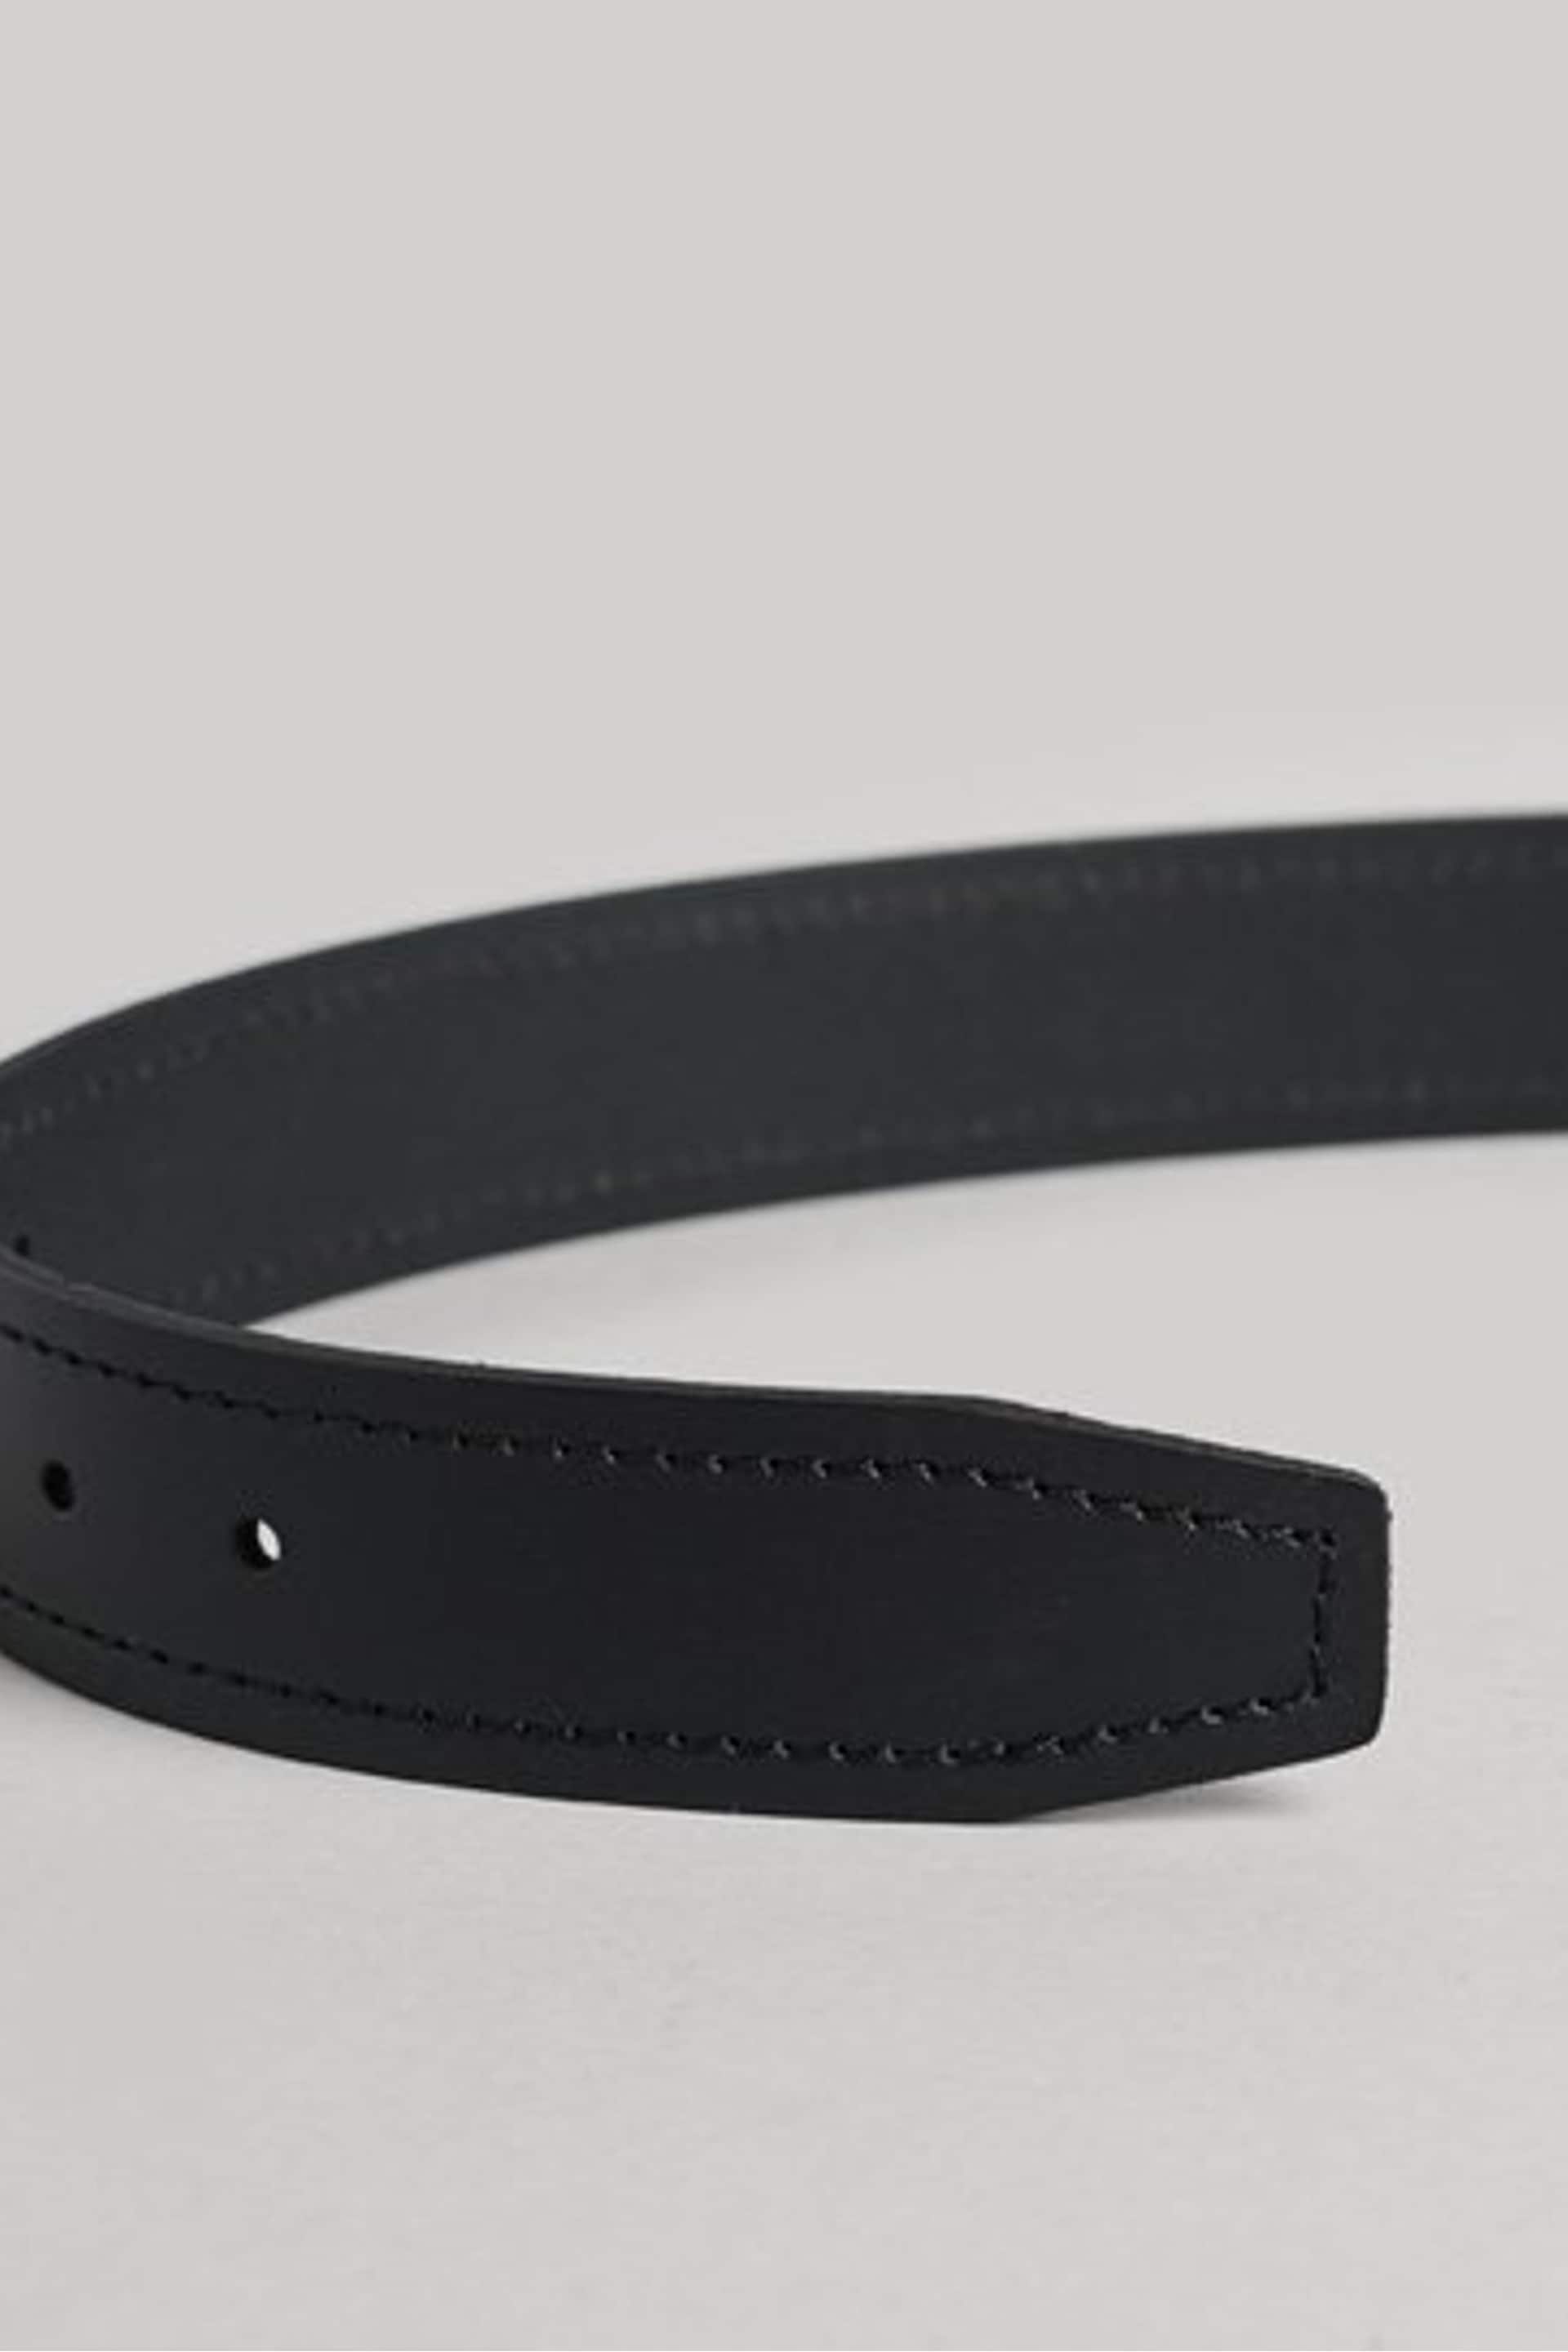 Superdry Dark Black Vintage Branded Belt - Image 2 of 4